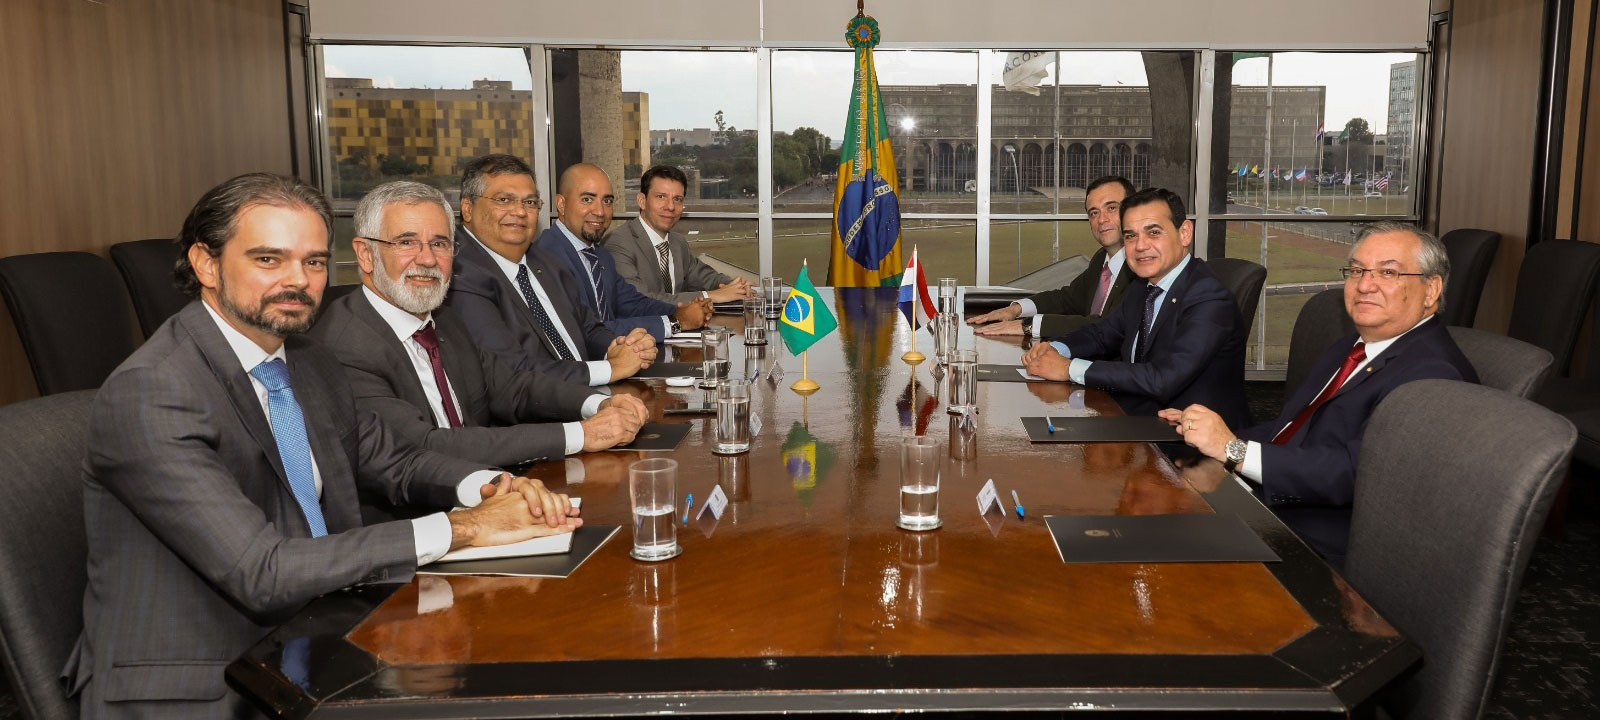 Brasil-cooperacionPORTADA1.jpg